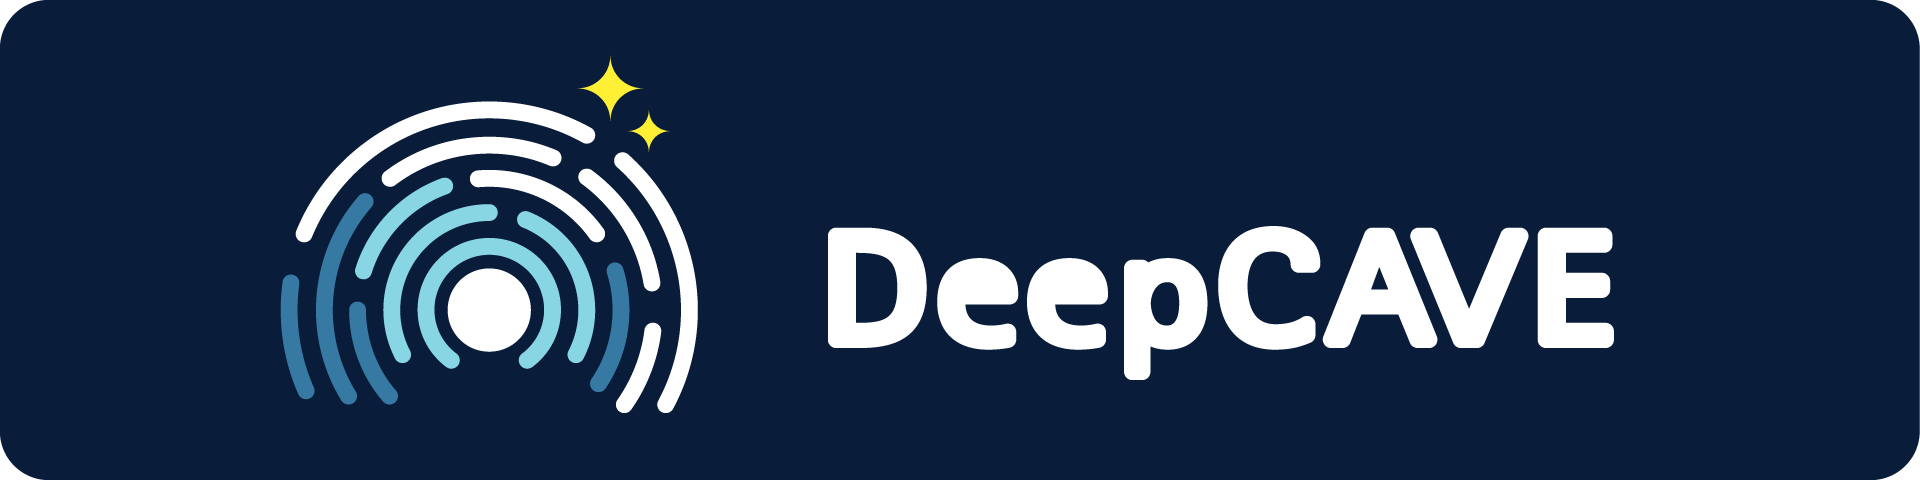 DeepCAVE_Logo_wide.png